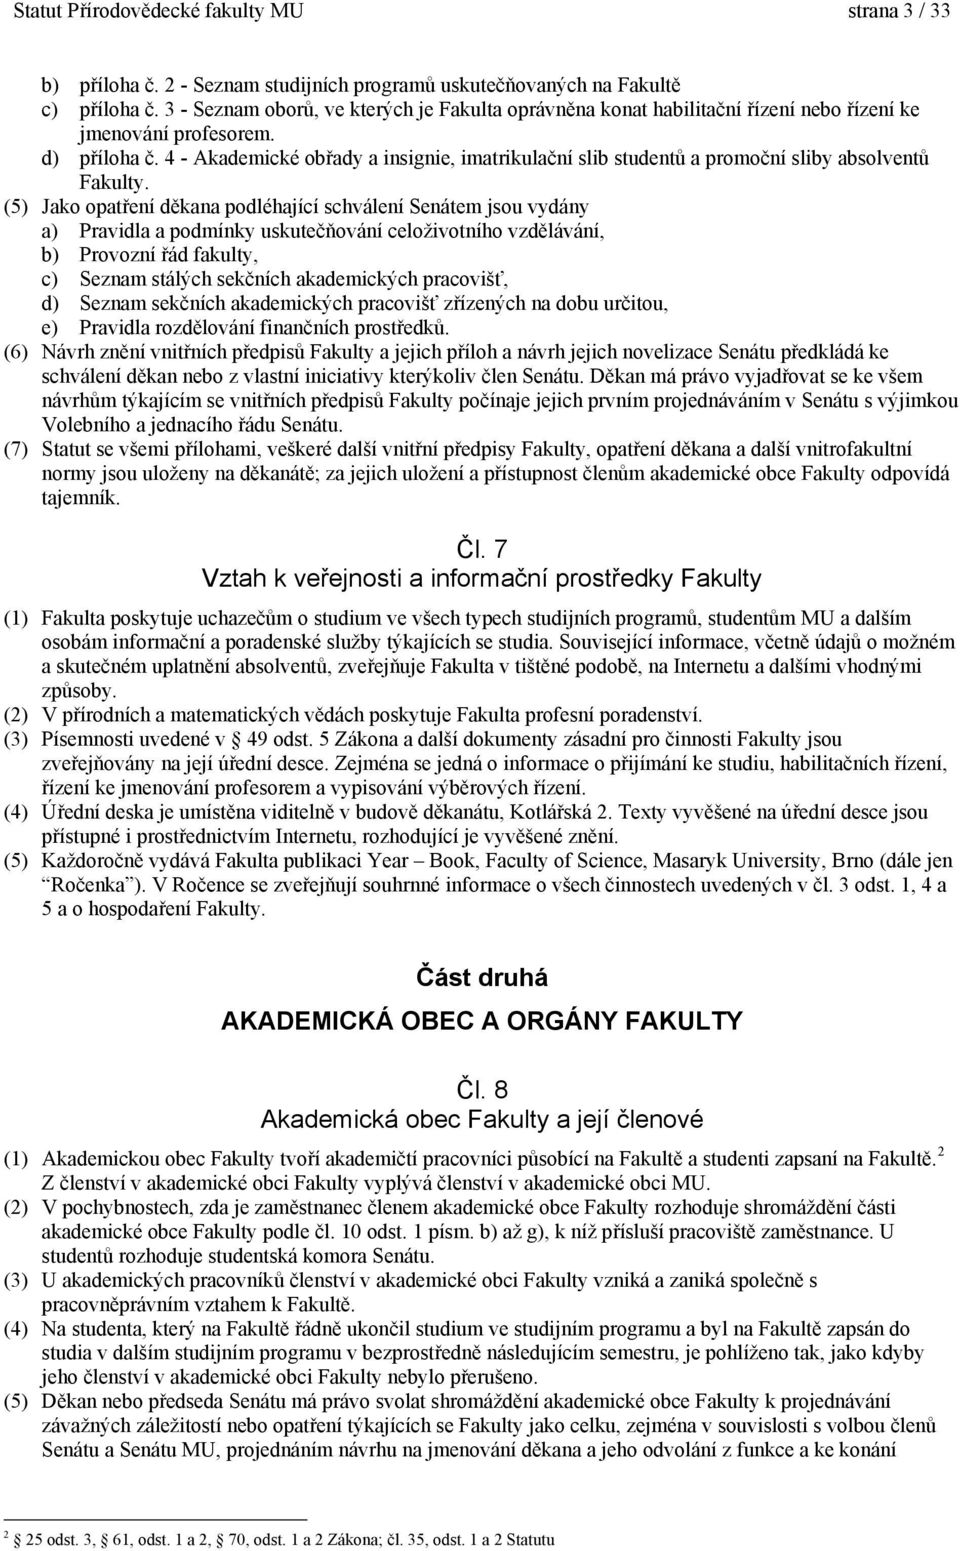 4 - Akademické obřady a insignie, imatrikulační slib studentů a promoční sliby absolventů Fakulty.